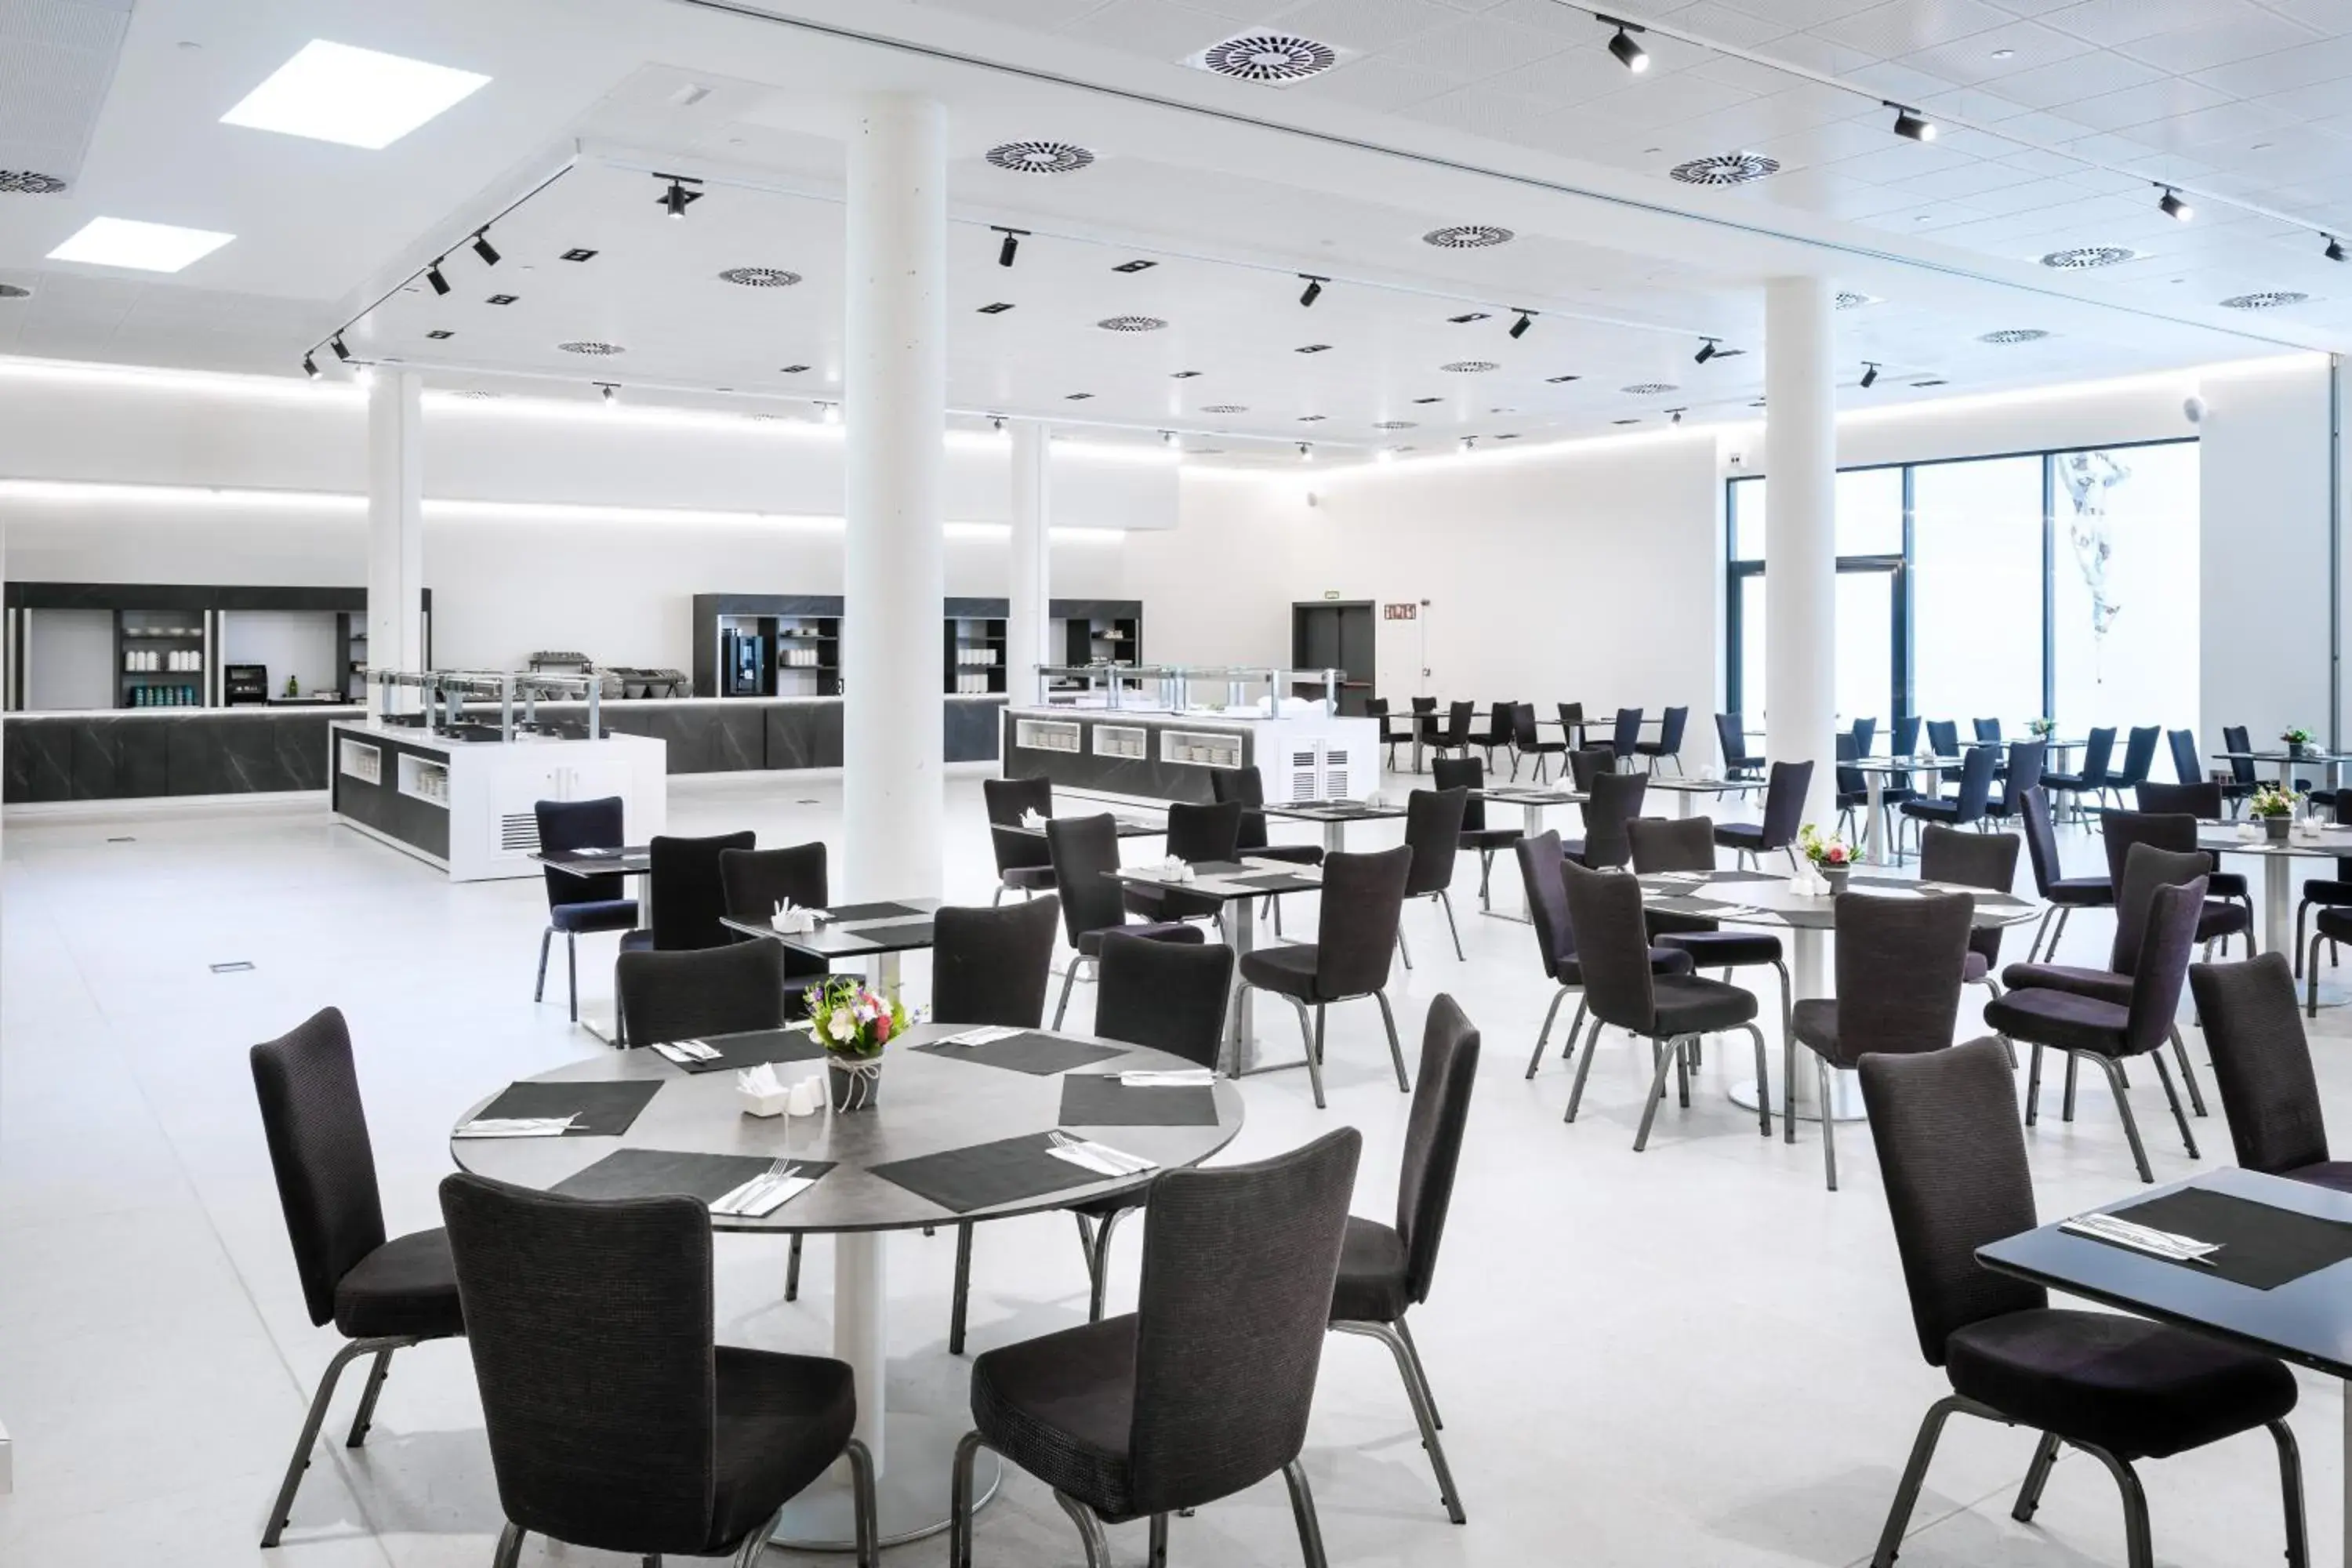 Buffet breakfast, Restaurant/Places to Eat in Alexandre Fira Congress